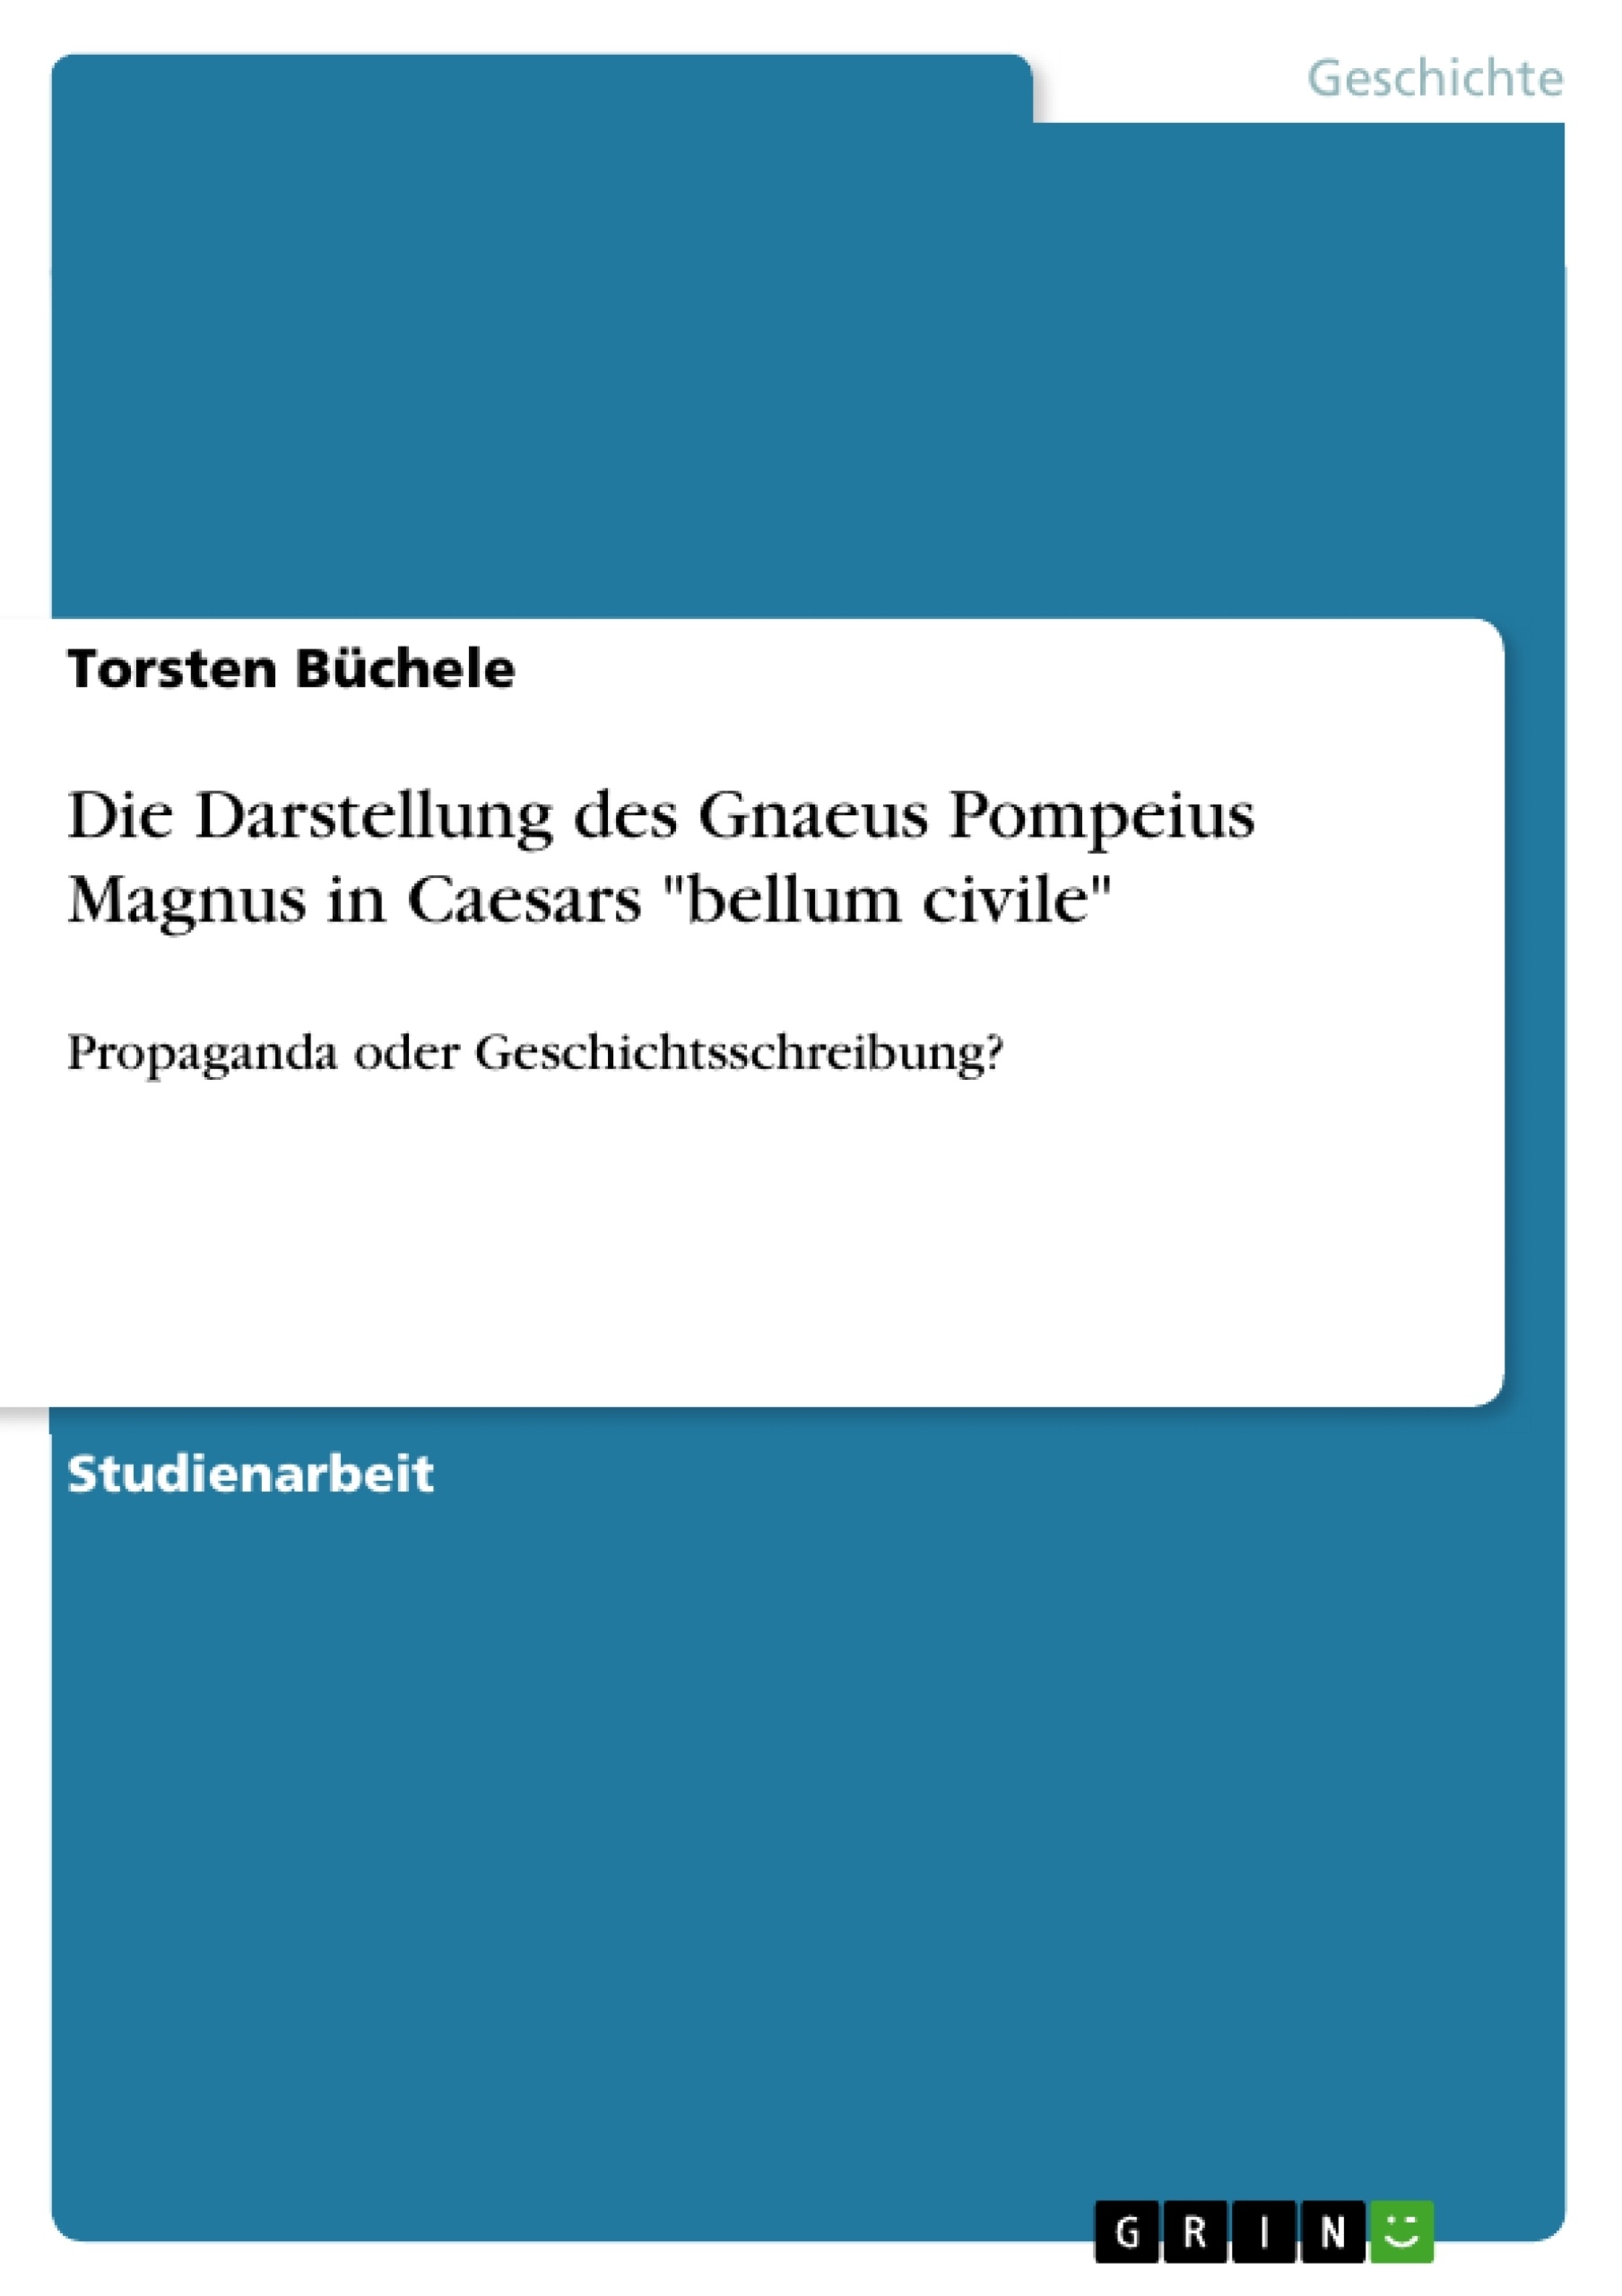 Title: Die Darstellung des Gnaeus Pompeius Magnus in Caesars "bellum civile"